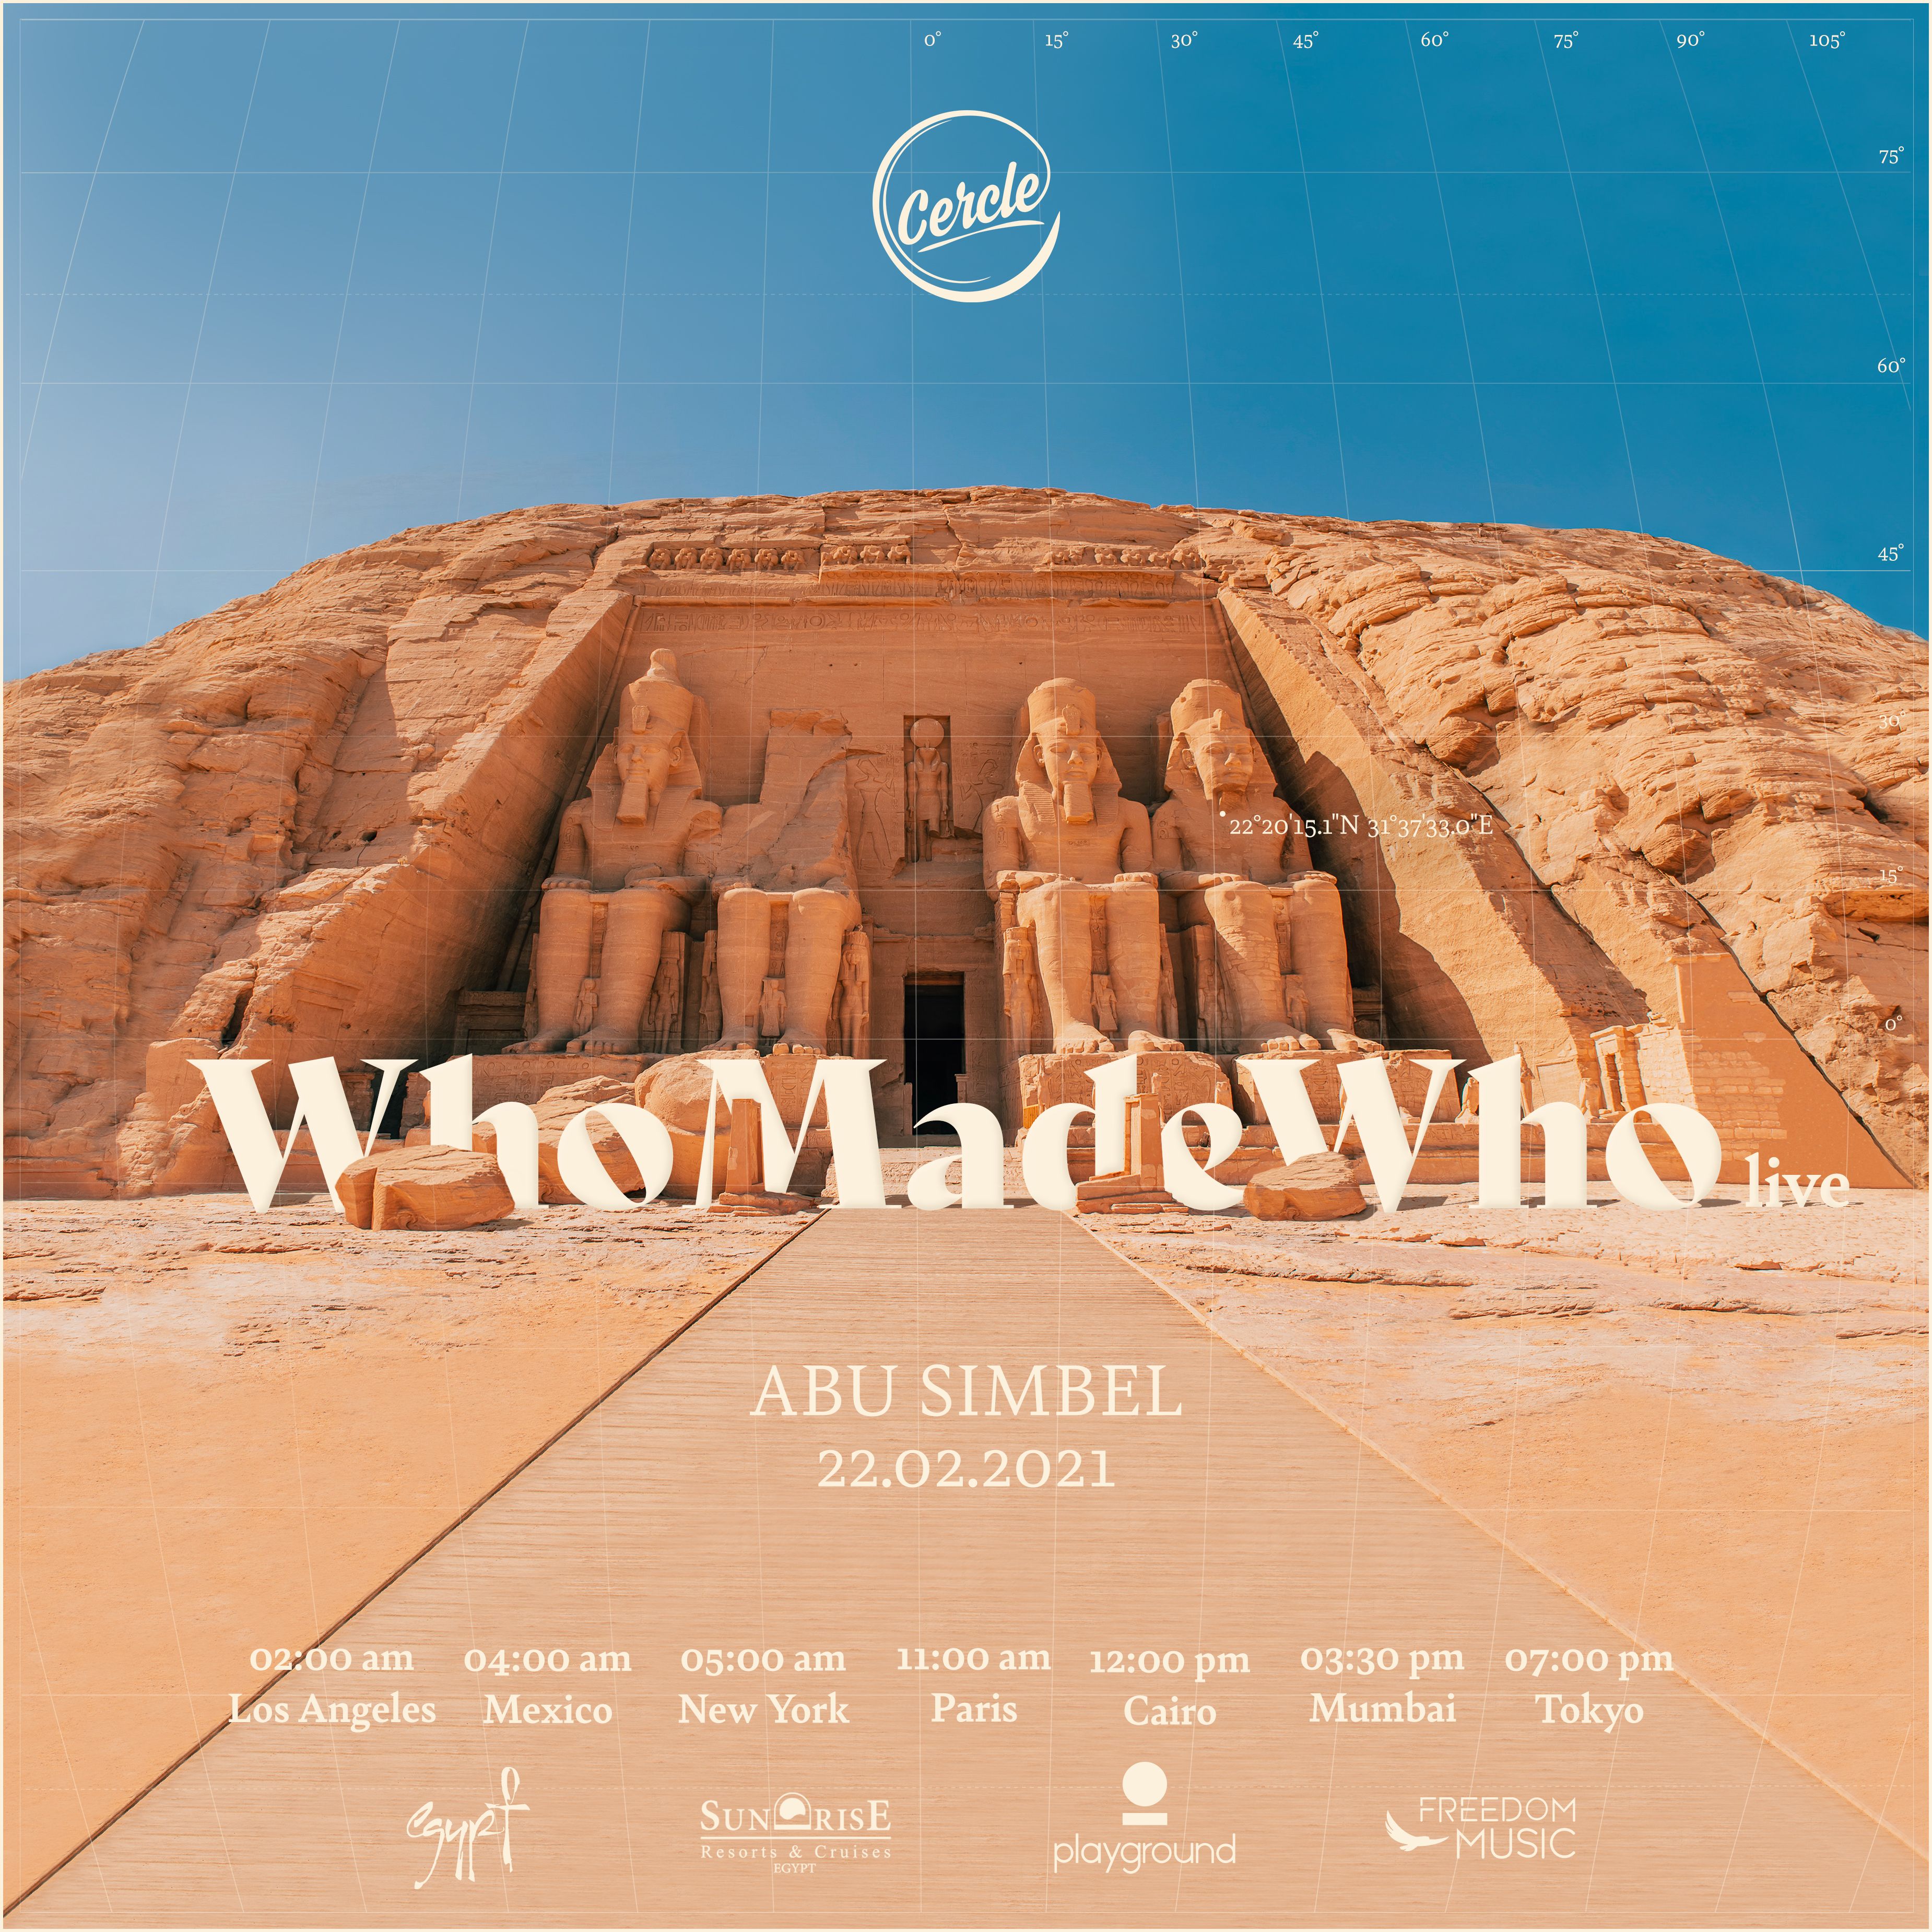 አውርድ WhoMadeWho live at Abu Simbel, Egypt for Cercle